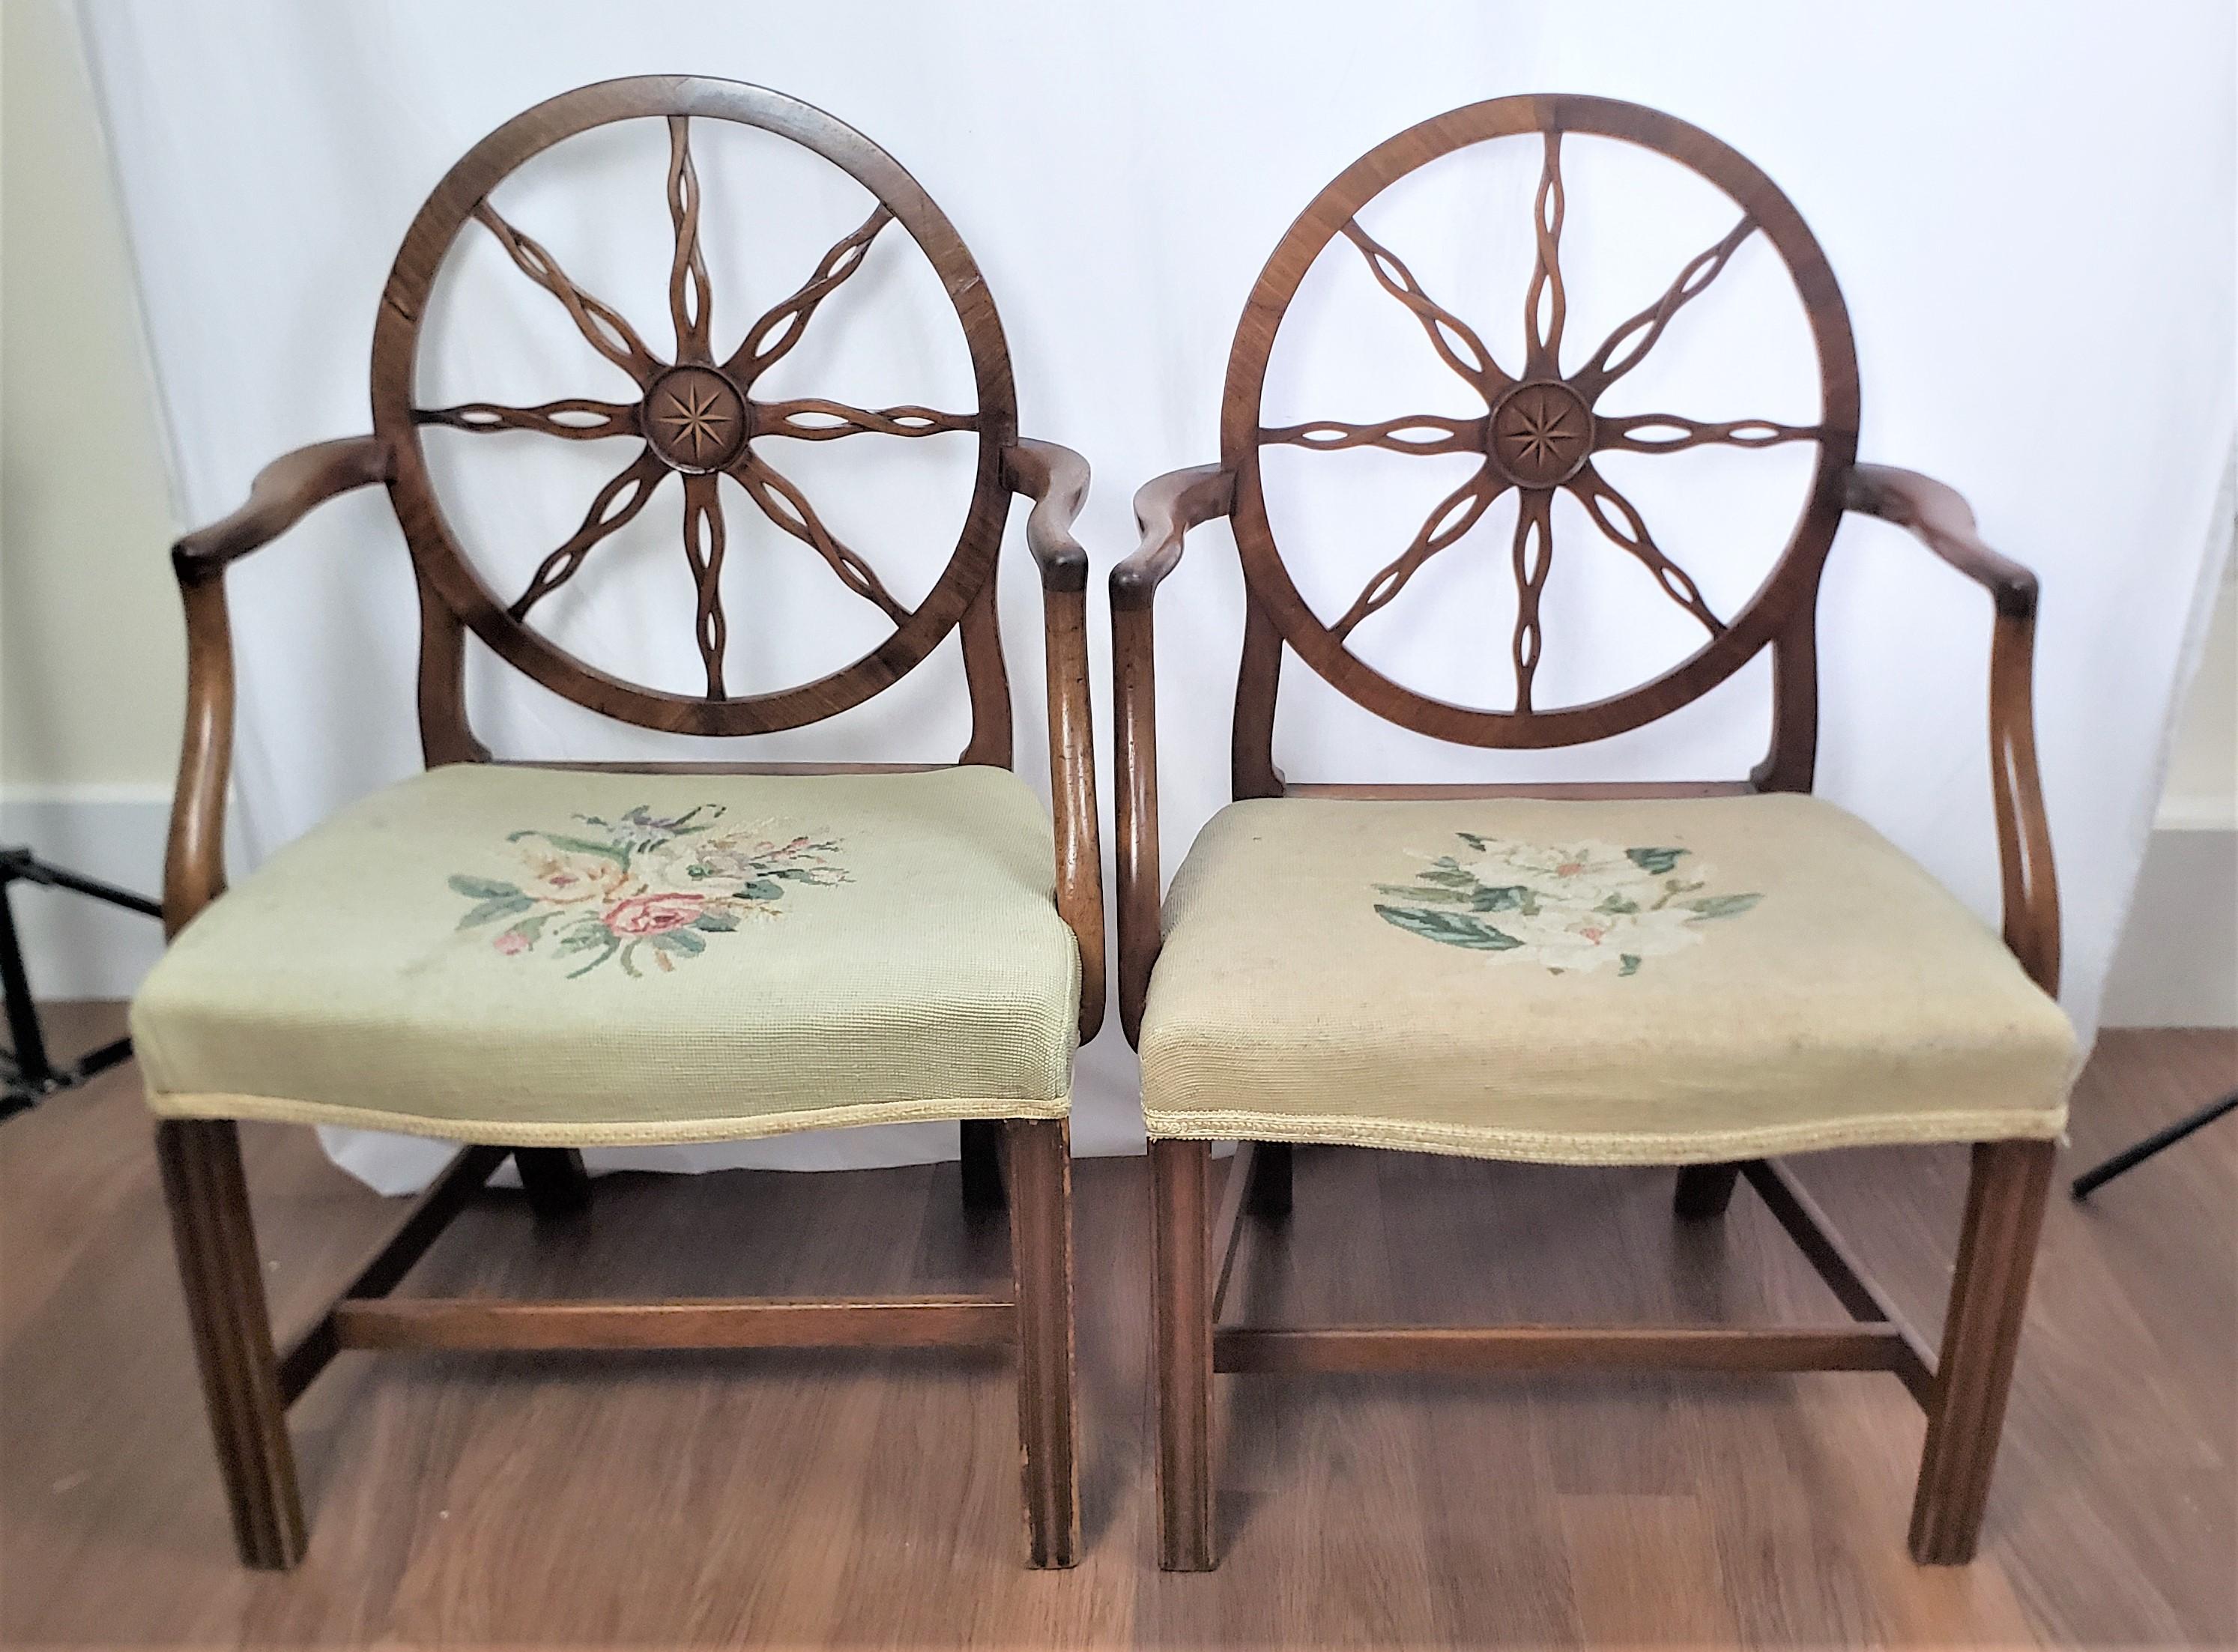 Dieses Paar antiker Sesselgestelle ist unsigniert, stammt aber vermutlich aus England und wurde um 1790 im Stil von König Georg III. gefertigt. Die Stühle sind aus Nussbaumholz gefertigt und verfügen über eine große Speichenradlehne mit stilisierten